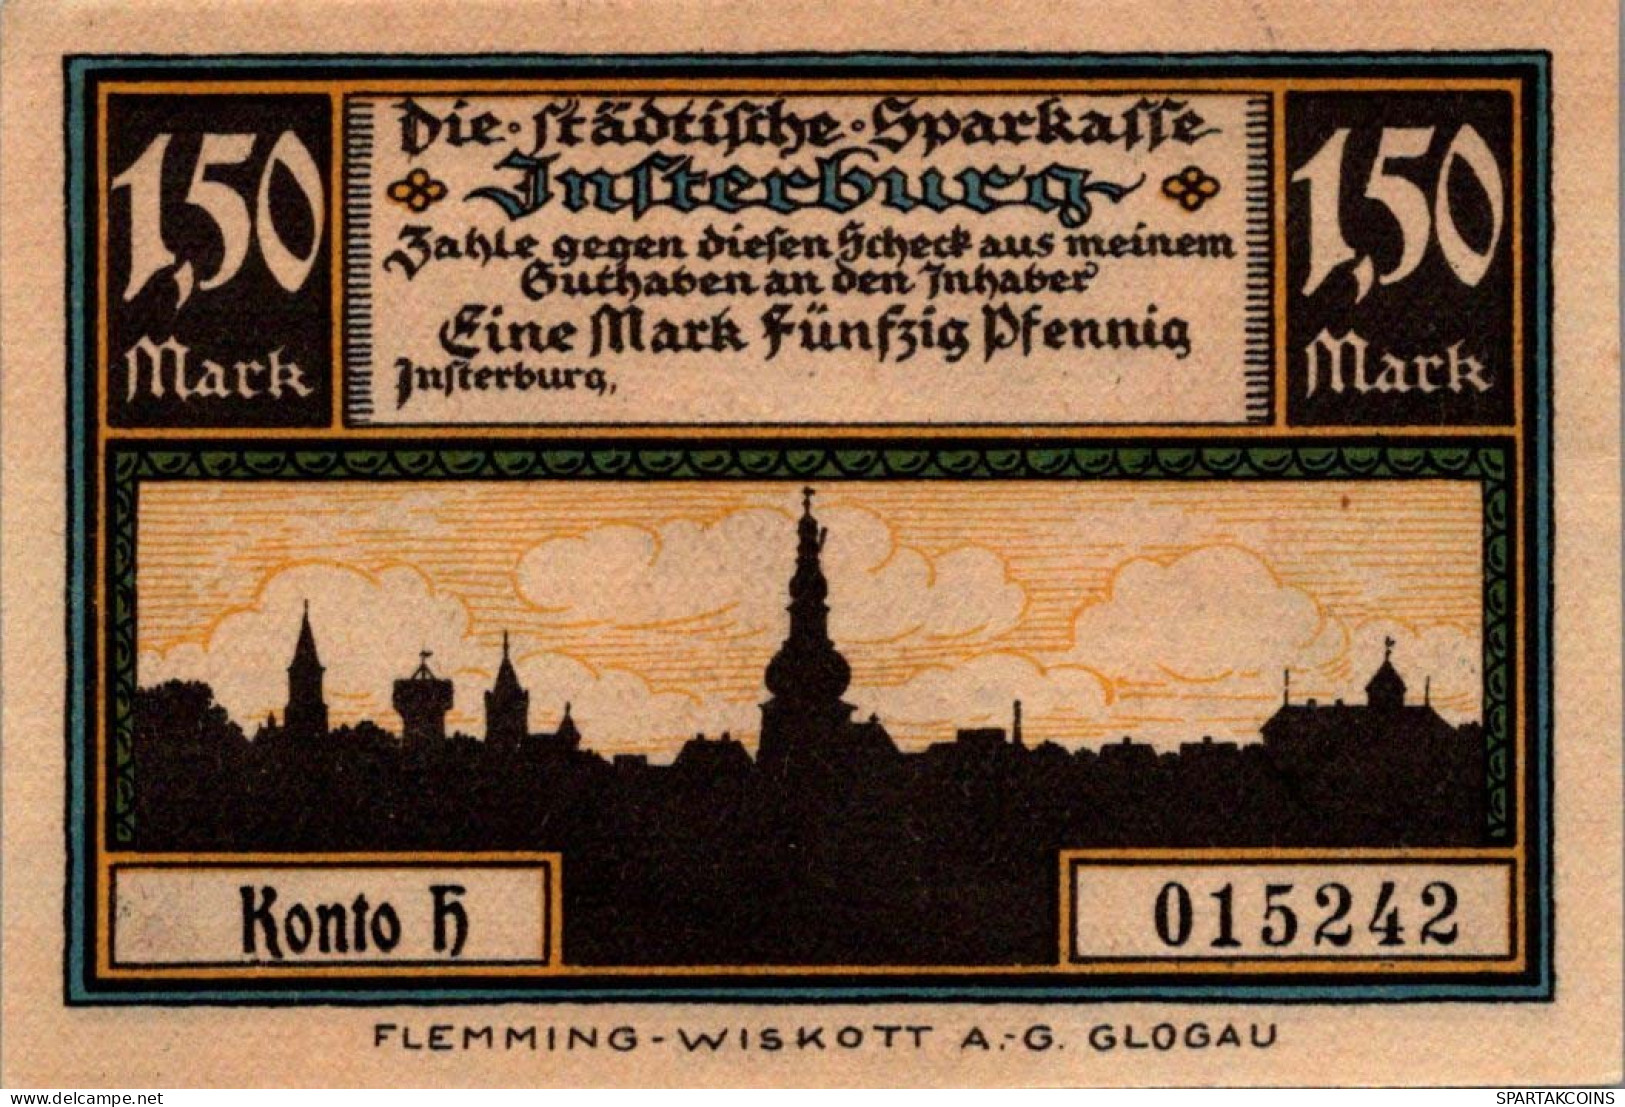 1.5 MARK 1914-1924 Stadt INSTERBURG East PRUSSLAND UNC DEUTSCHLAND Notgeld #PD128 - [11] Emisiones Locales